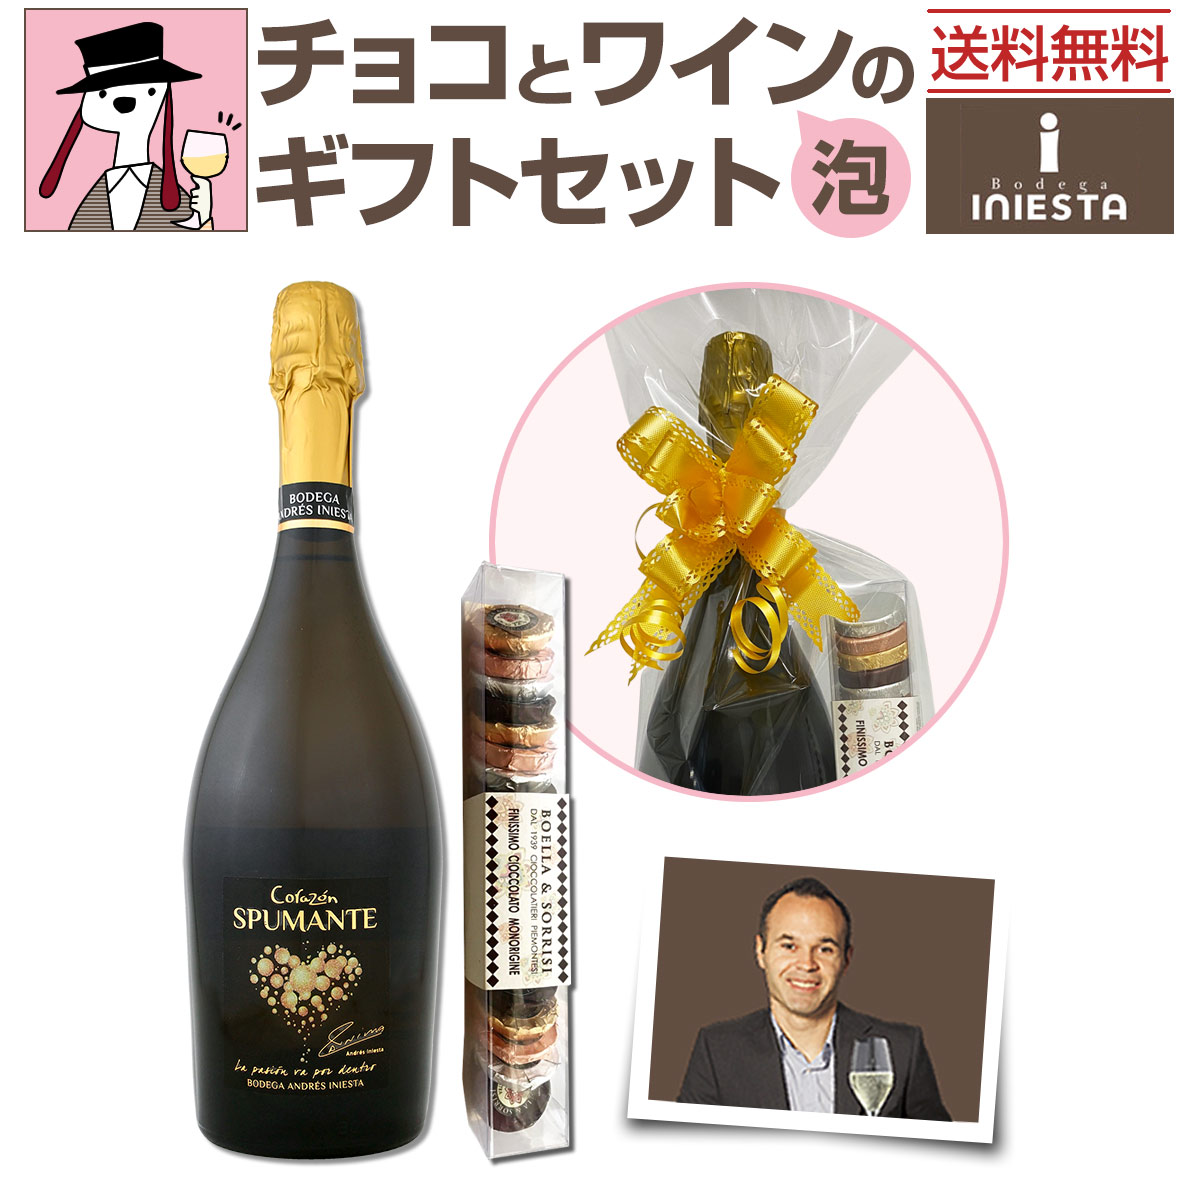 楽天市場 送料無料 チョコとワインのギフトセット 泡b 京橋ワイン